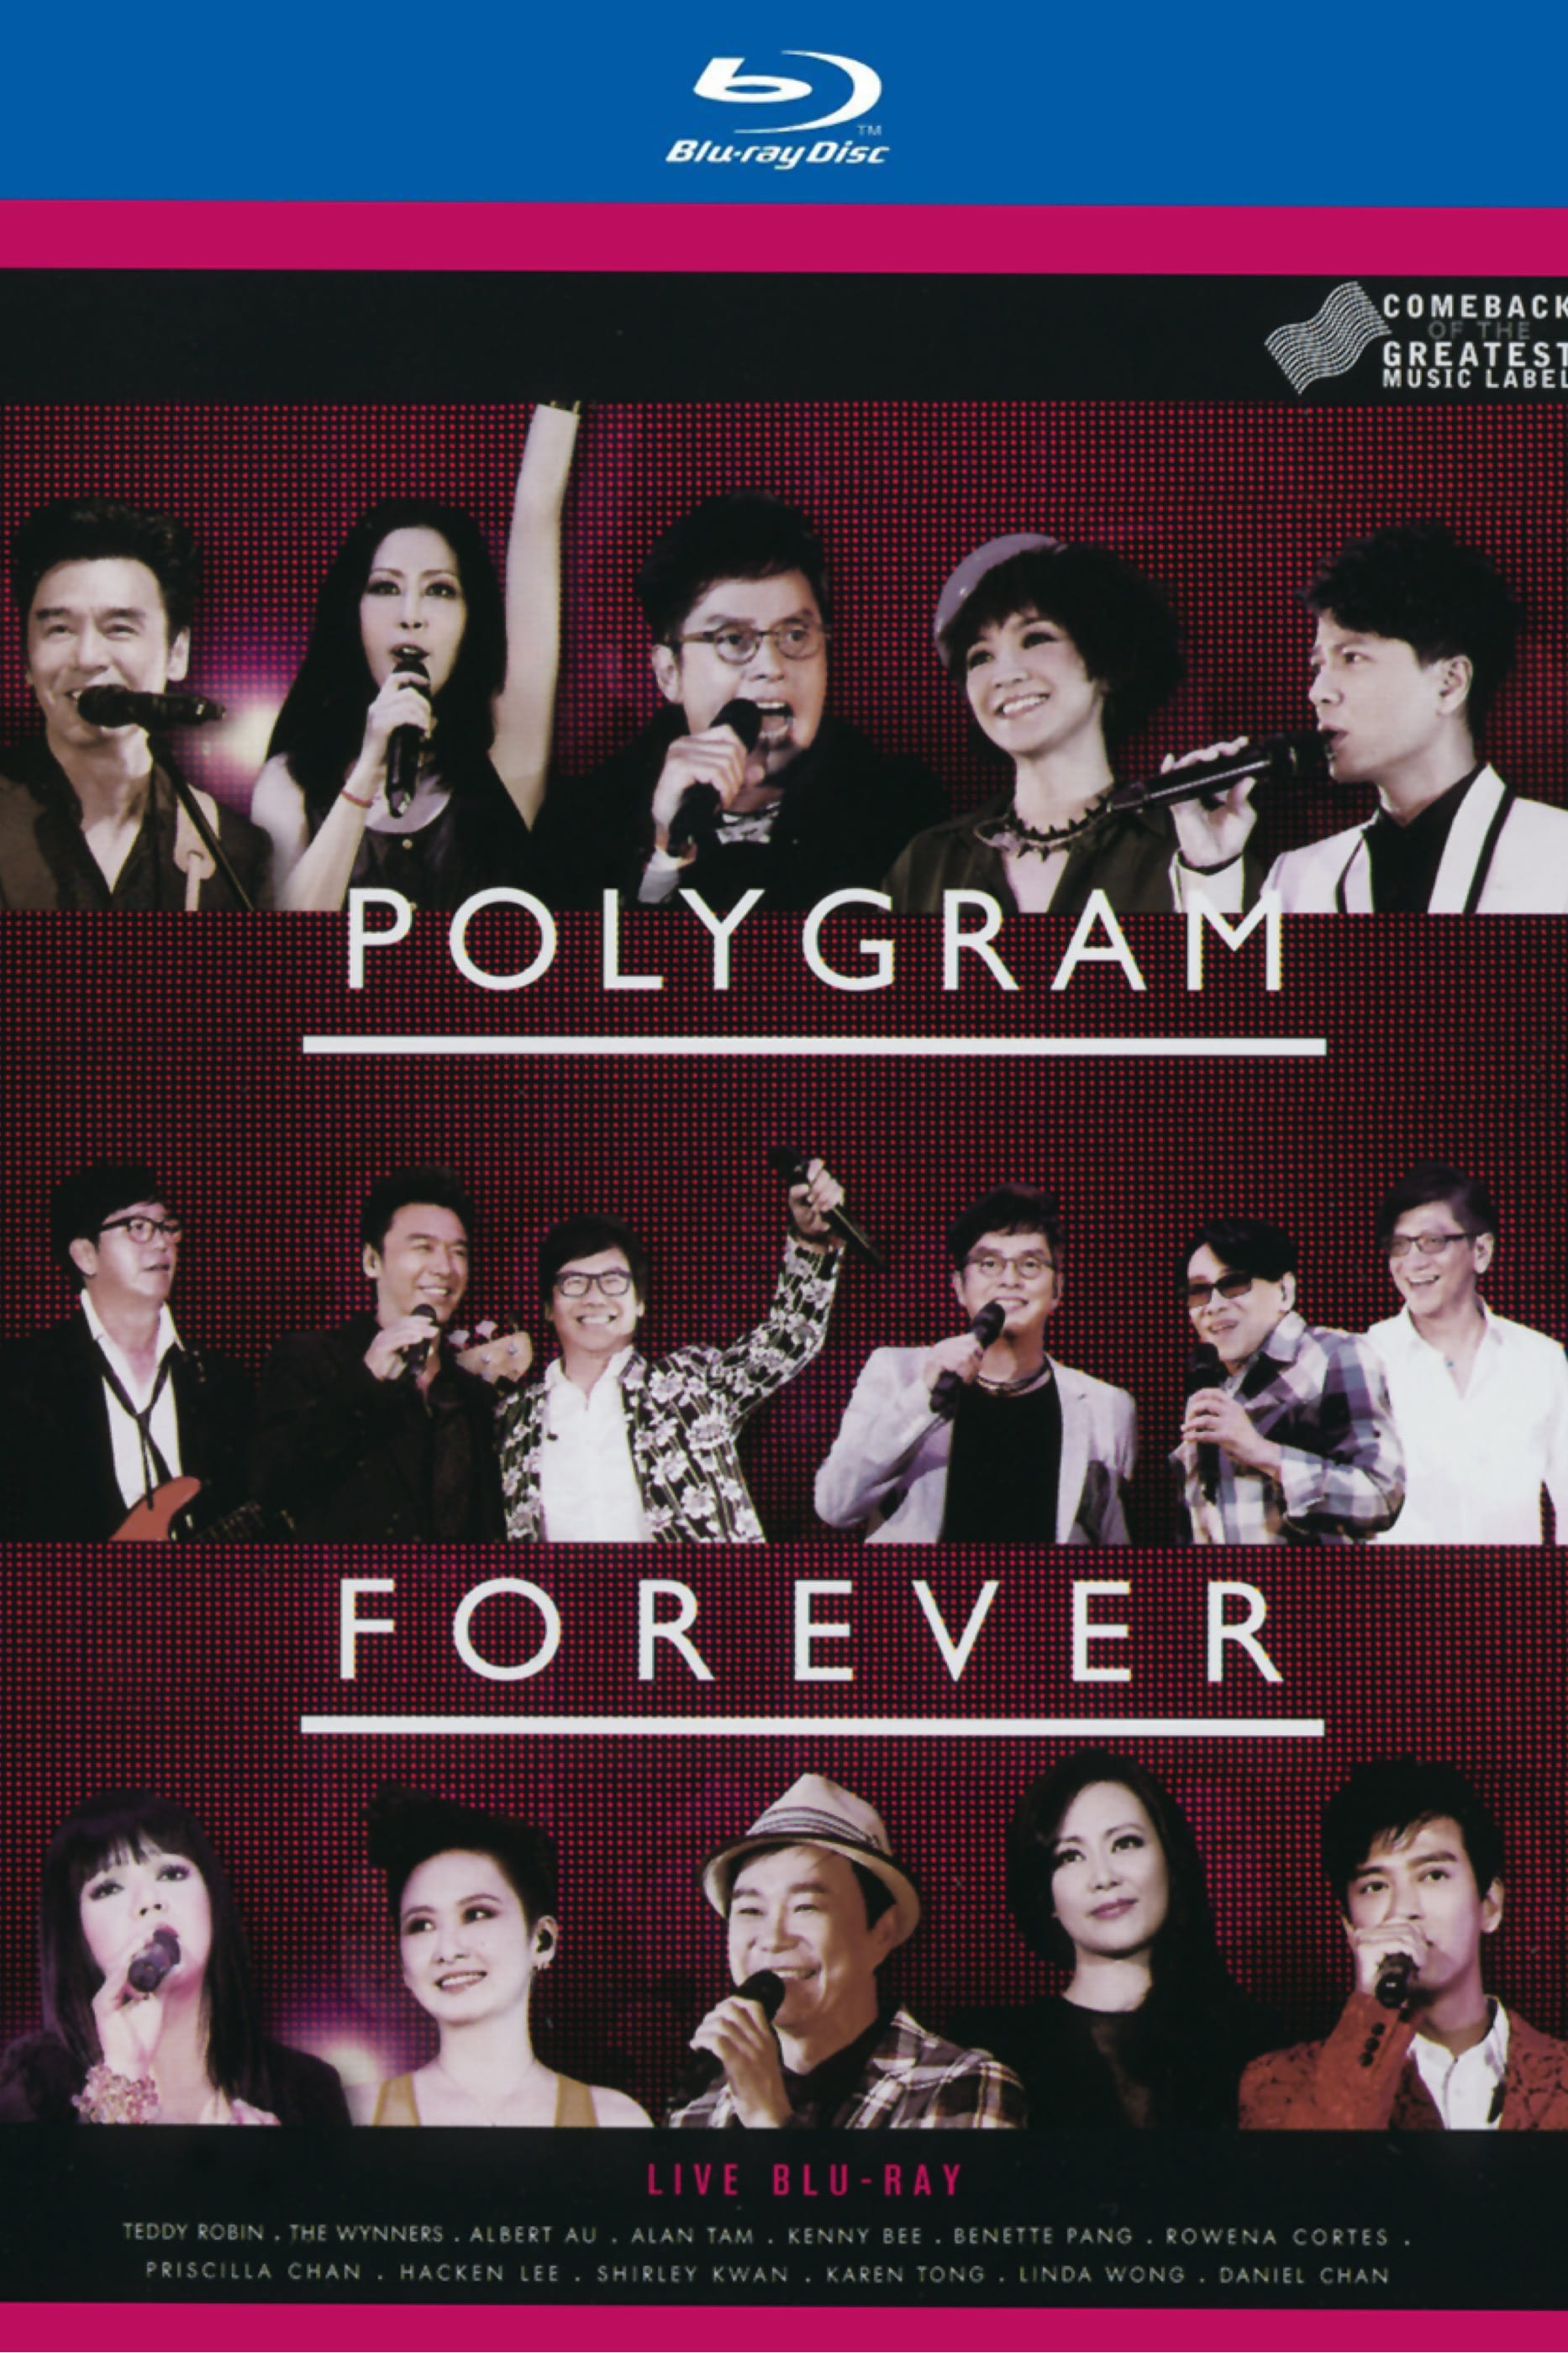 PolyGram Forever Live